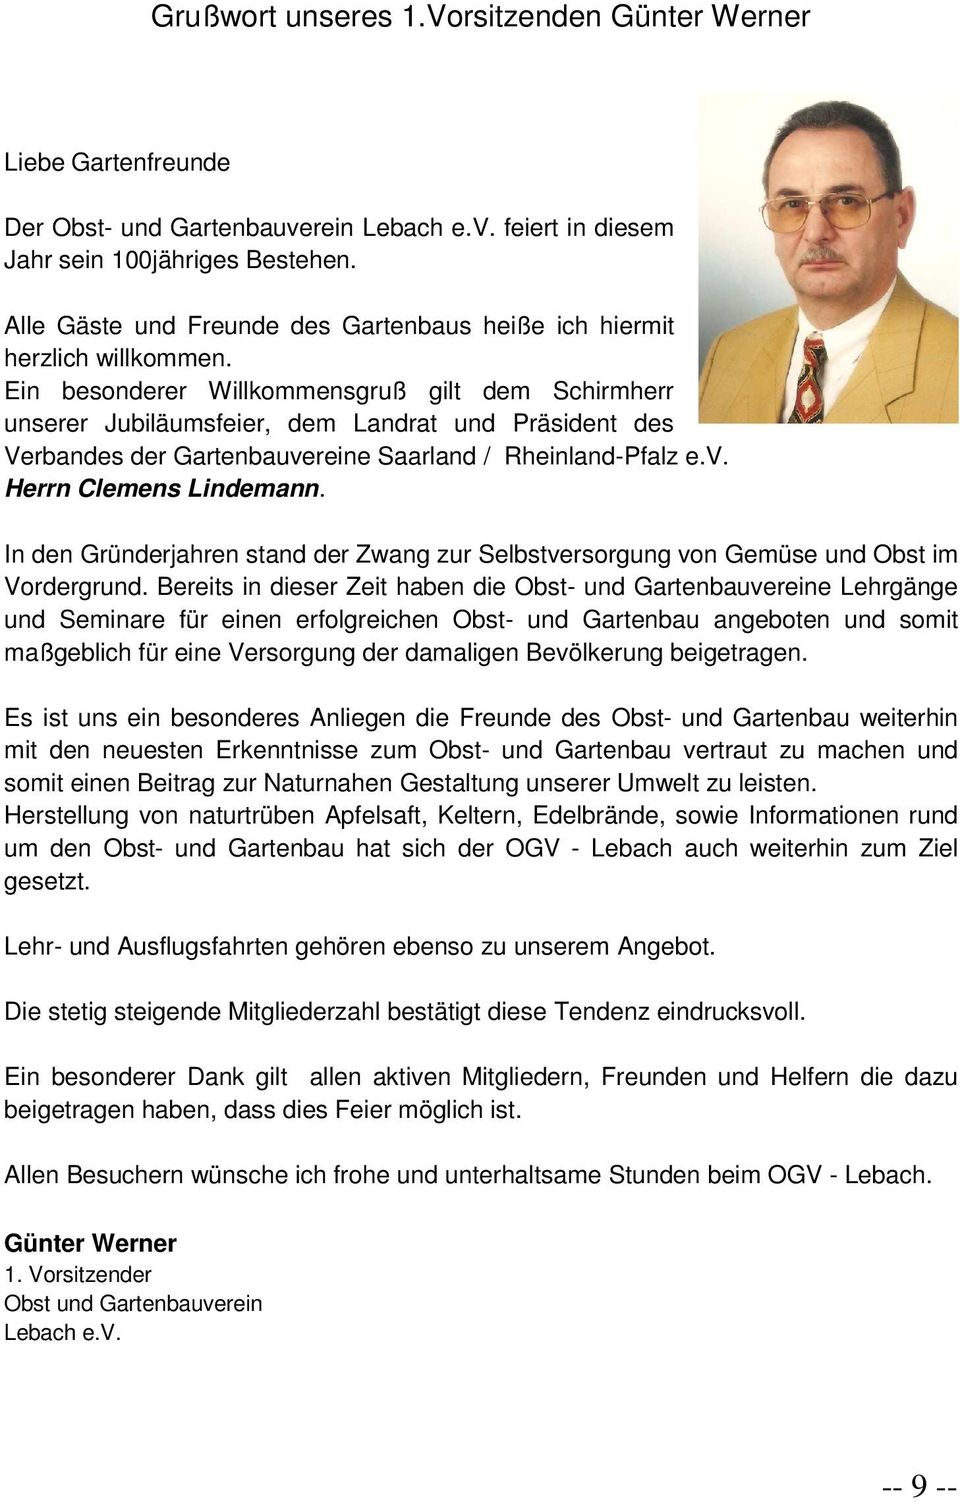 Ein besonderer Willkommensgruß gilt dem Schirmherr unserer Jubiläumsfeier, dem Landrat und Präsident des Verbandes der Gartenbauvereine Saarland / Rheinland-Pfalz e.v. Herrn Clemens Lindemann.